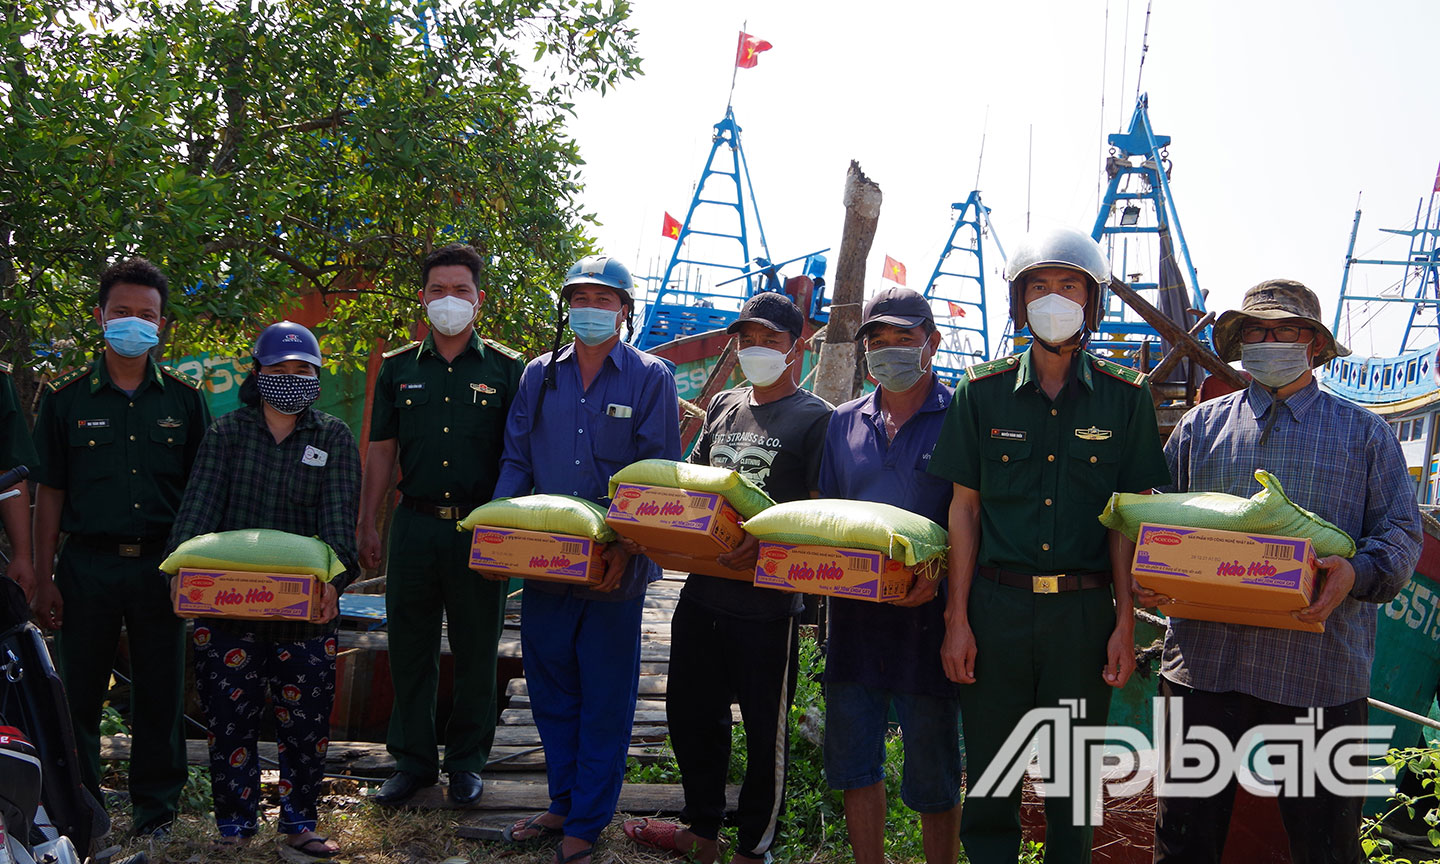 Bộ đội biên phòng Tiền Giang trực tiếp đến tặng quà cho ngư dân trên tàu.